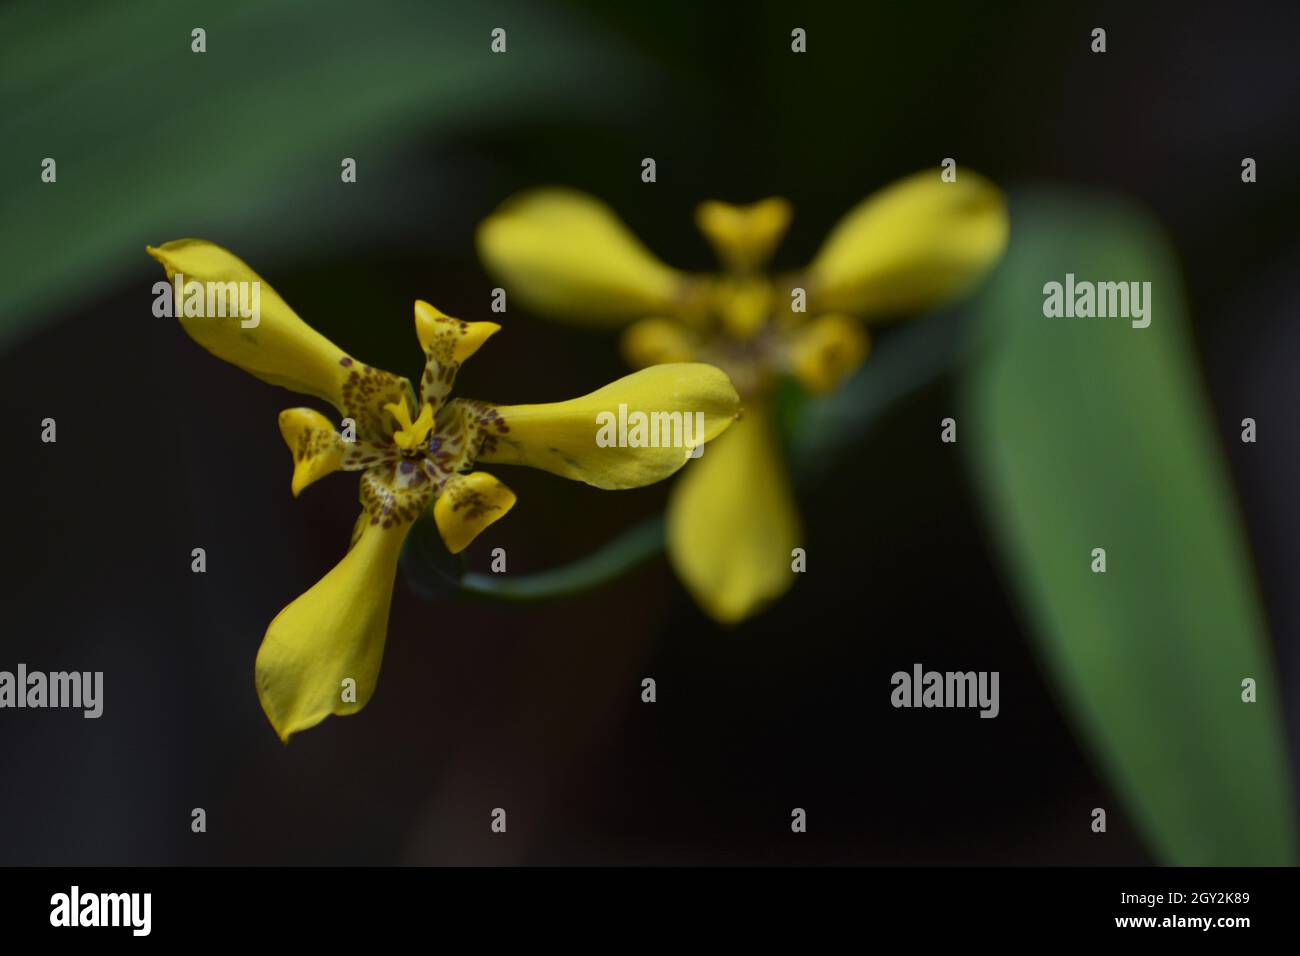 Irisblumenfotografie Stockfoto